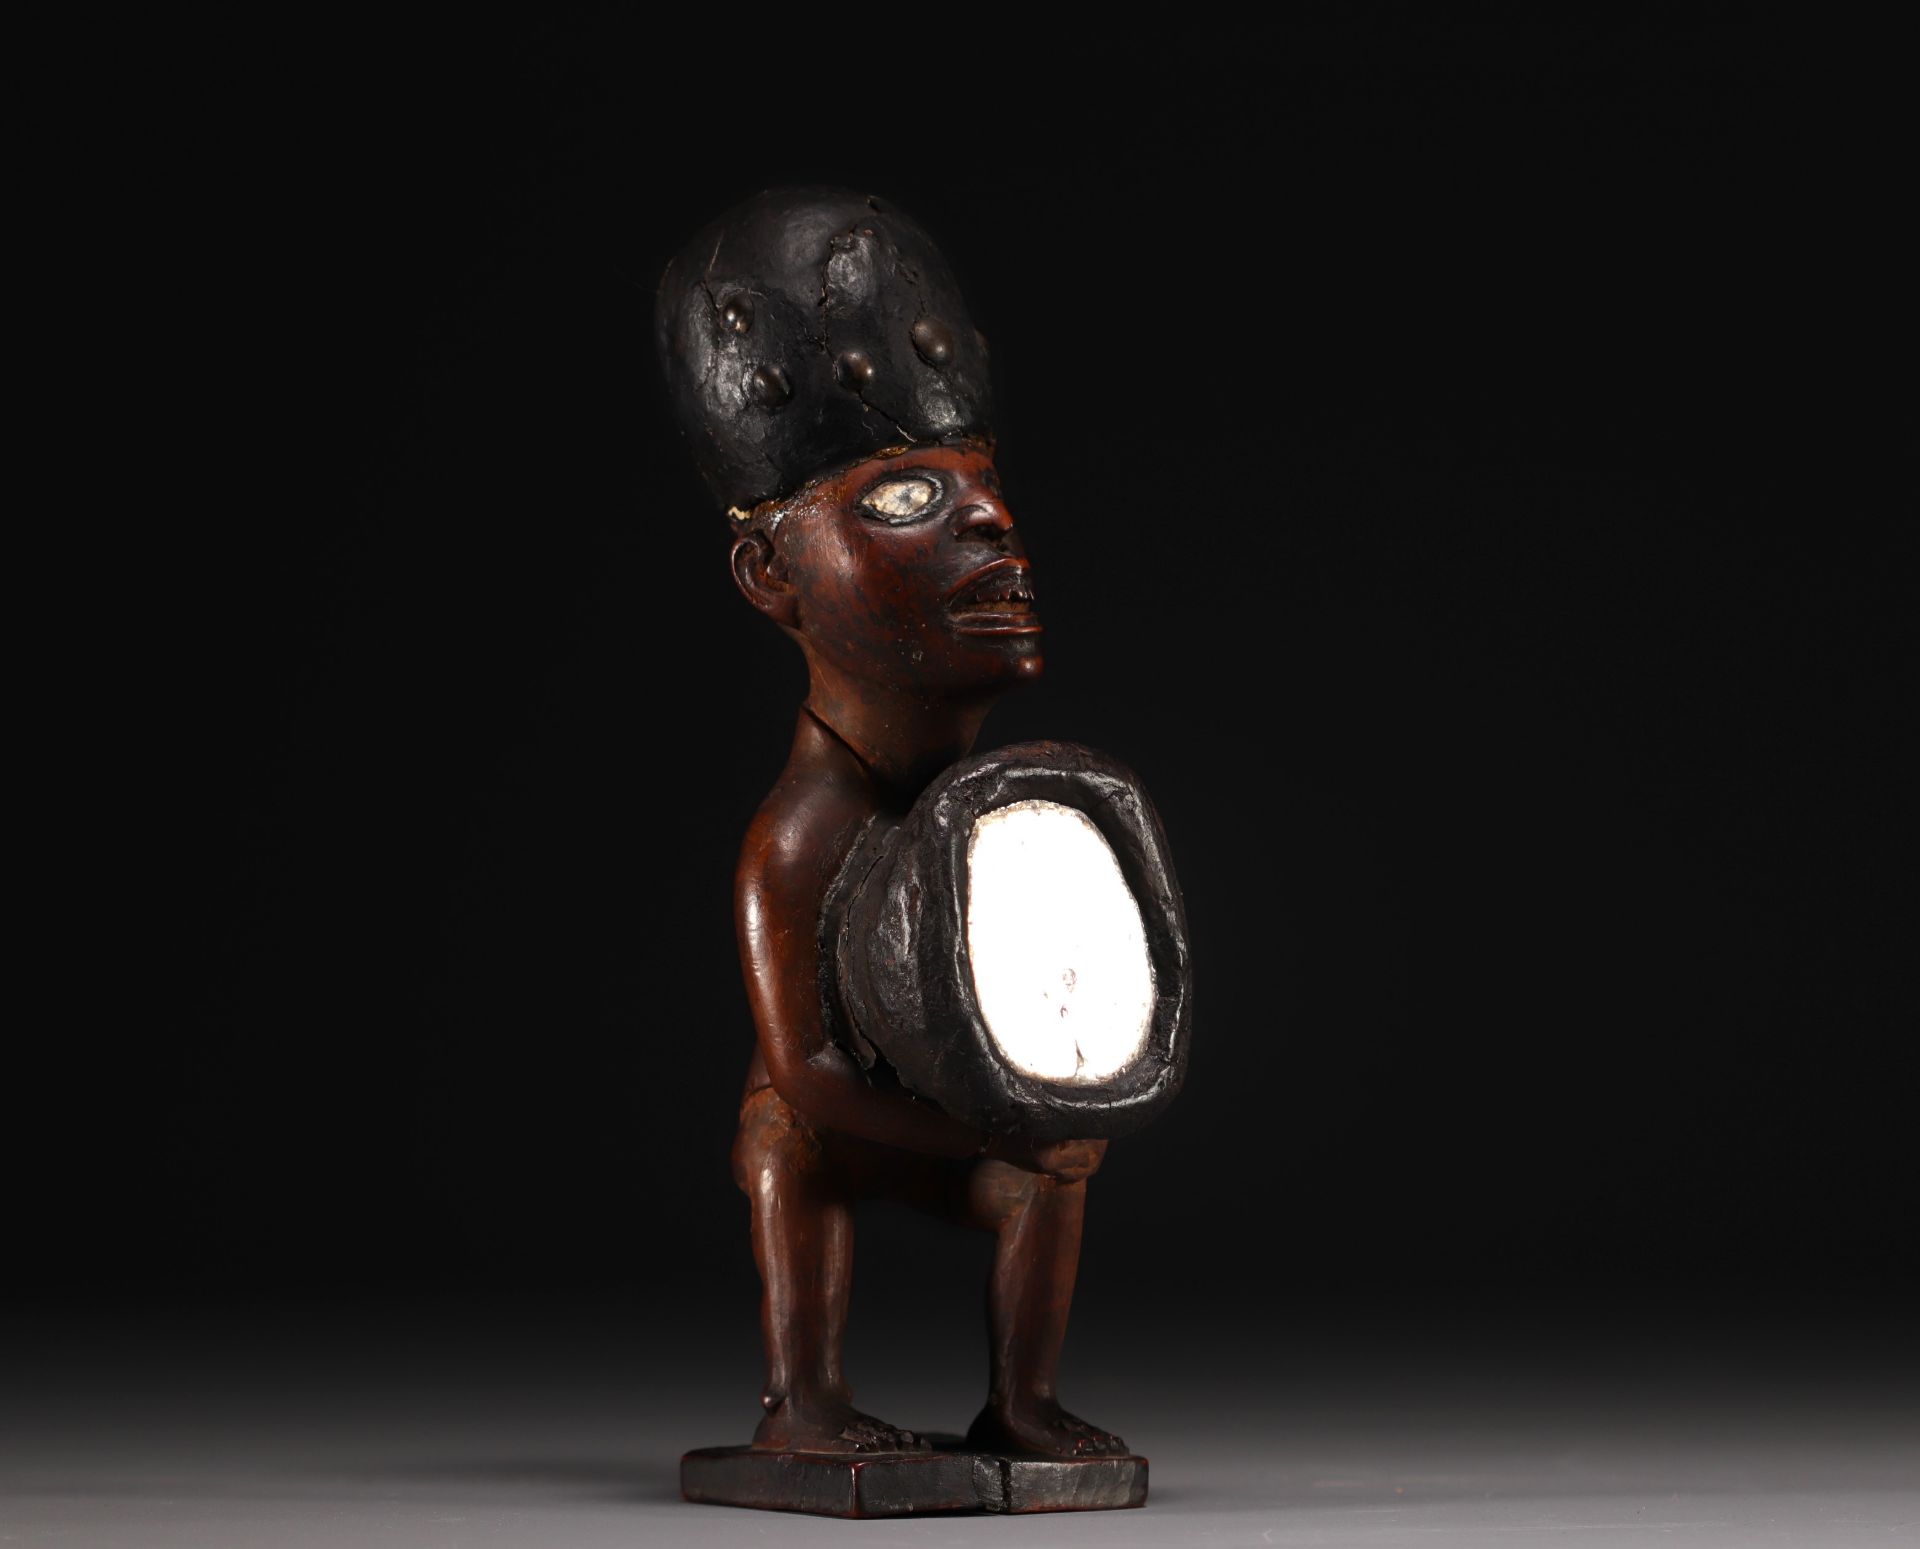 Statue/ fetish - Yombe - Rep.dem.Congo